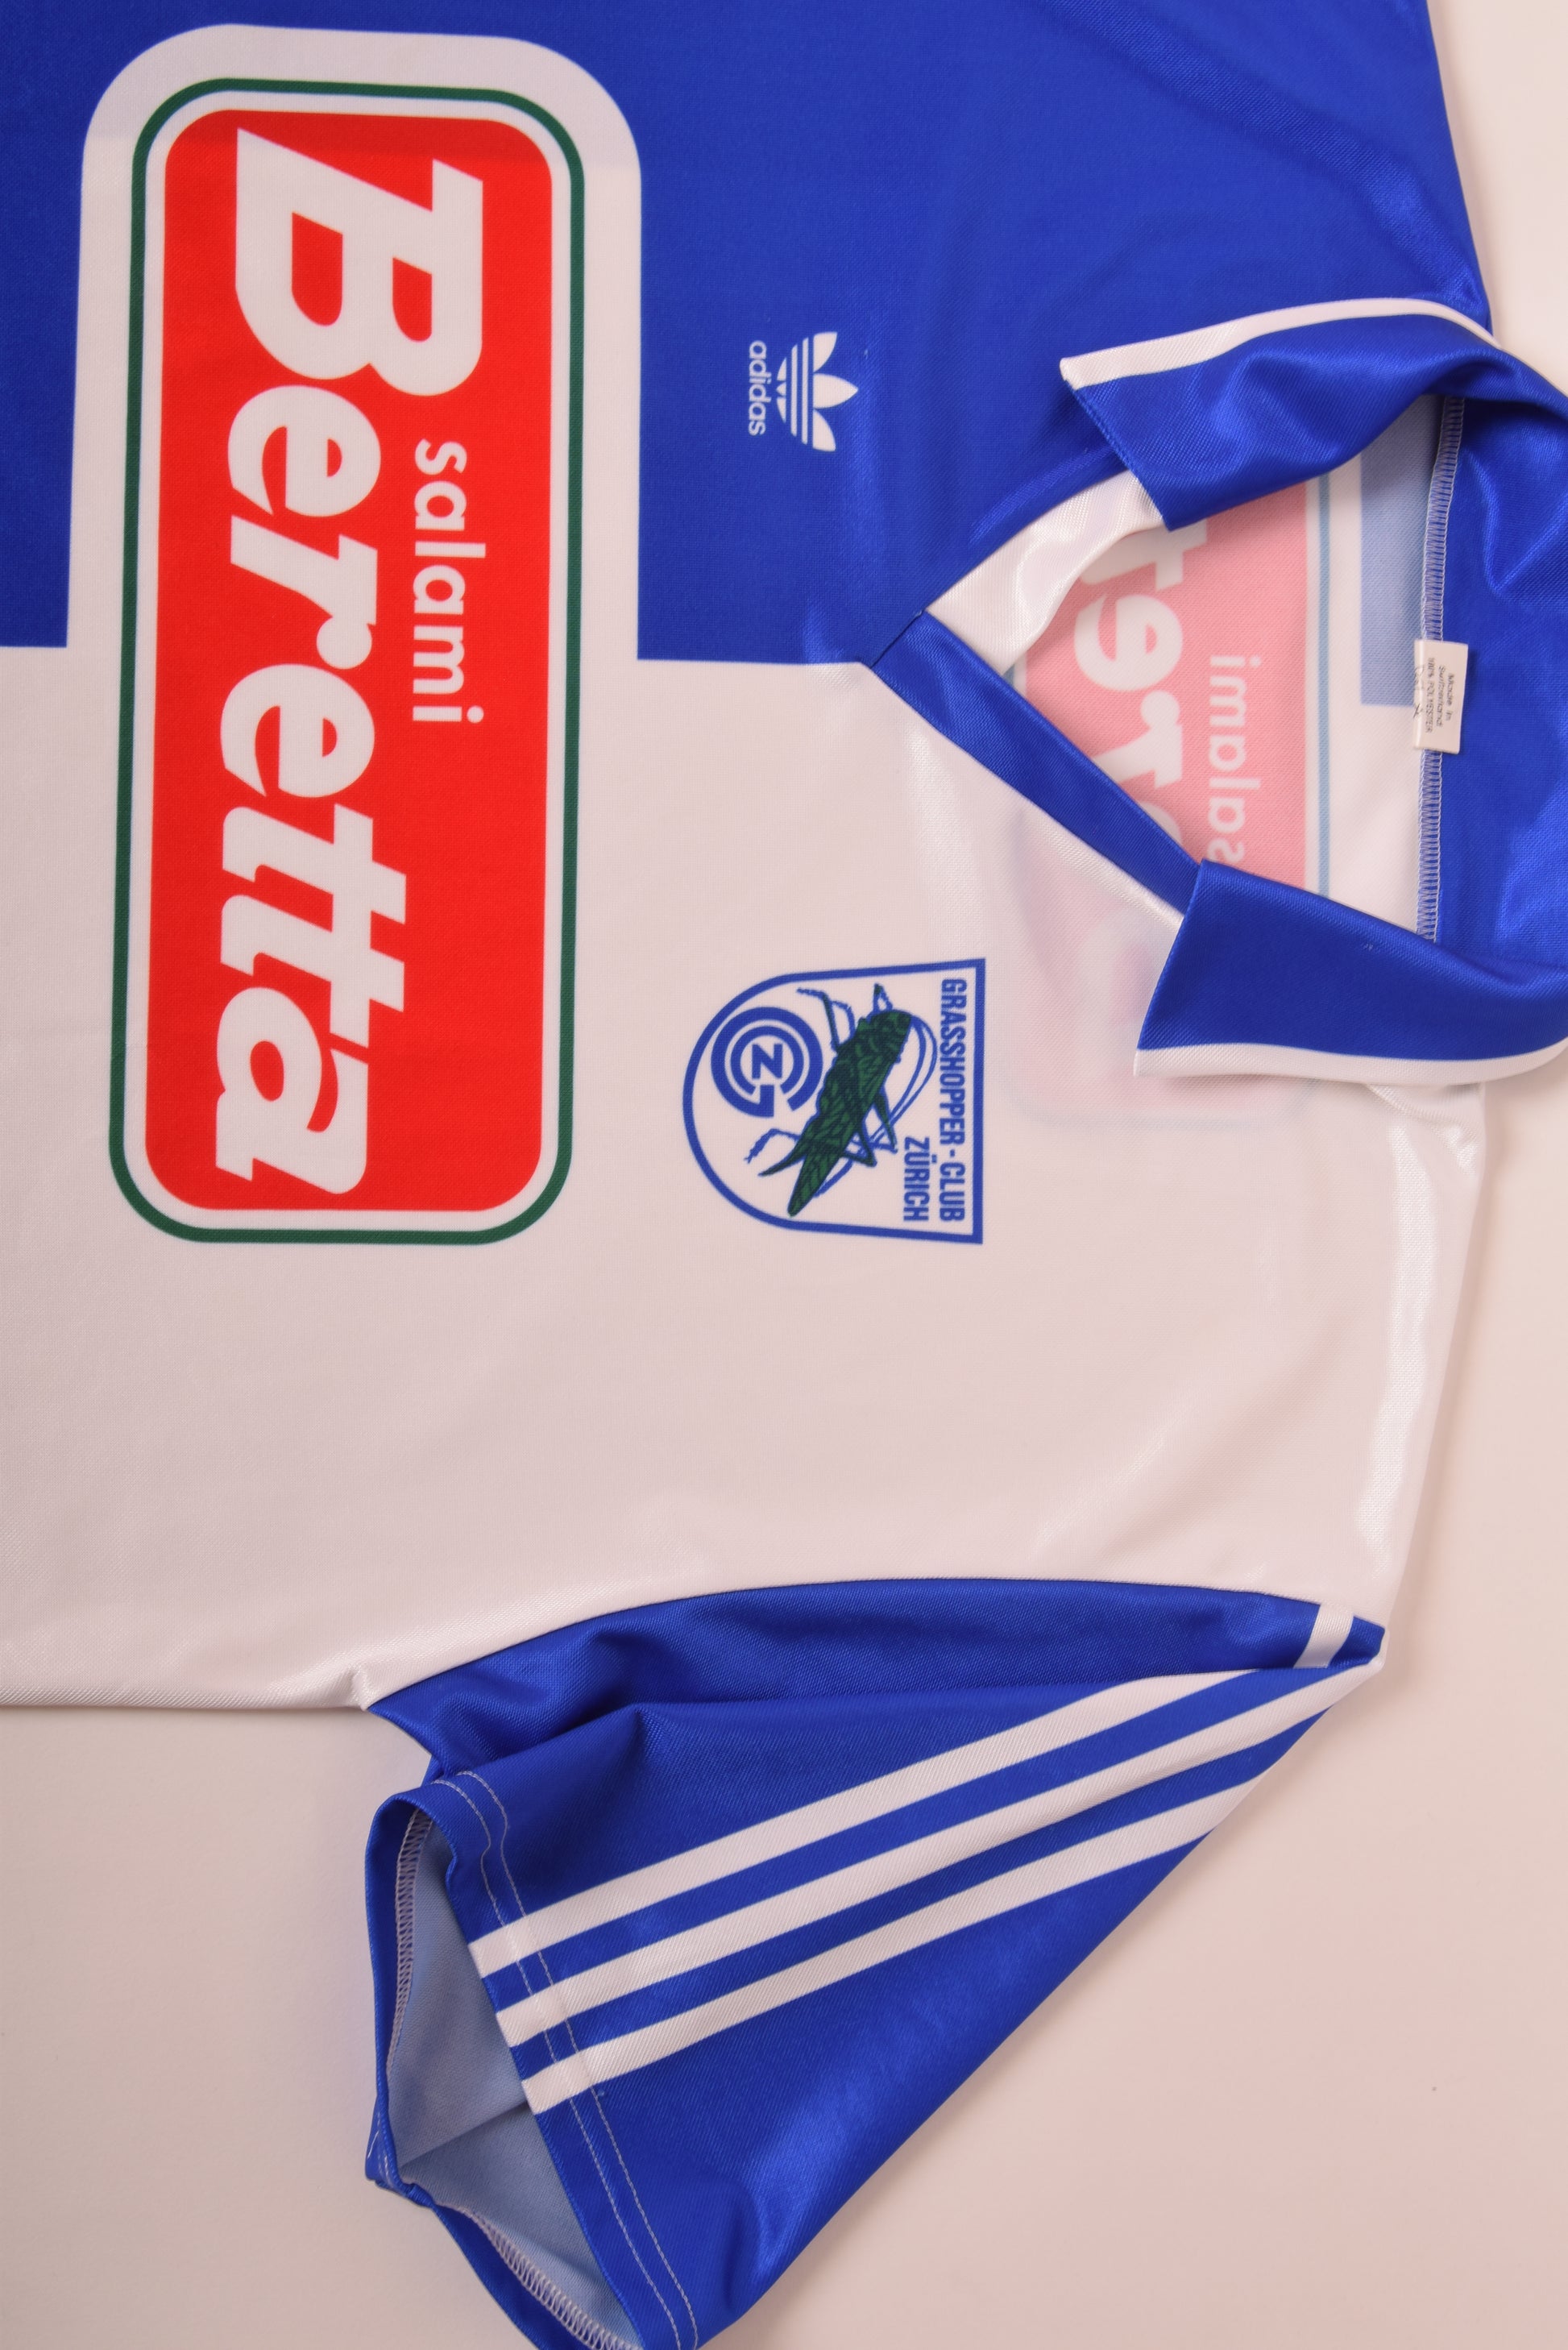 Vintage Grasshopper Club Zurich Adidas 1992-1994 1996 Home Football Shirt White Blue Beretta Size L Made in Switzerland